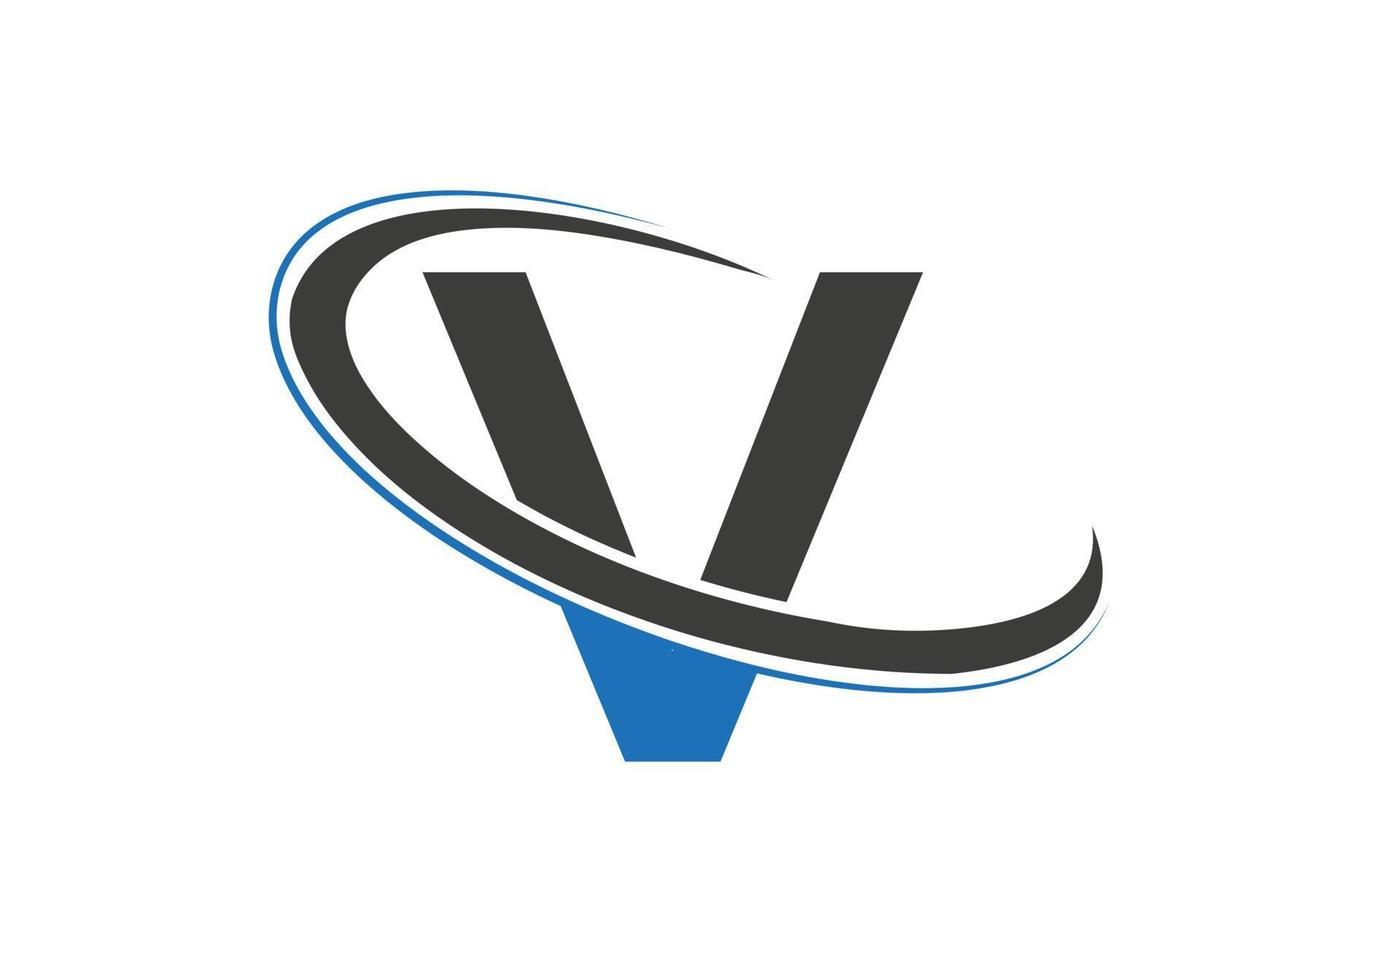 anfangsbuchstabe v logo für immobilien-, geschäfts- und unternehmensidentität vektor